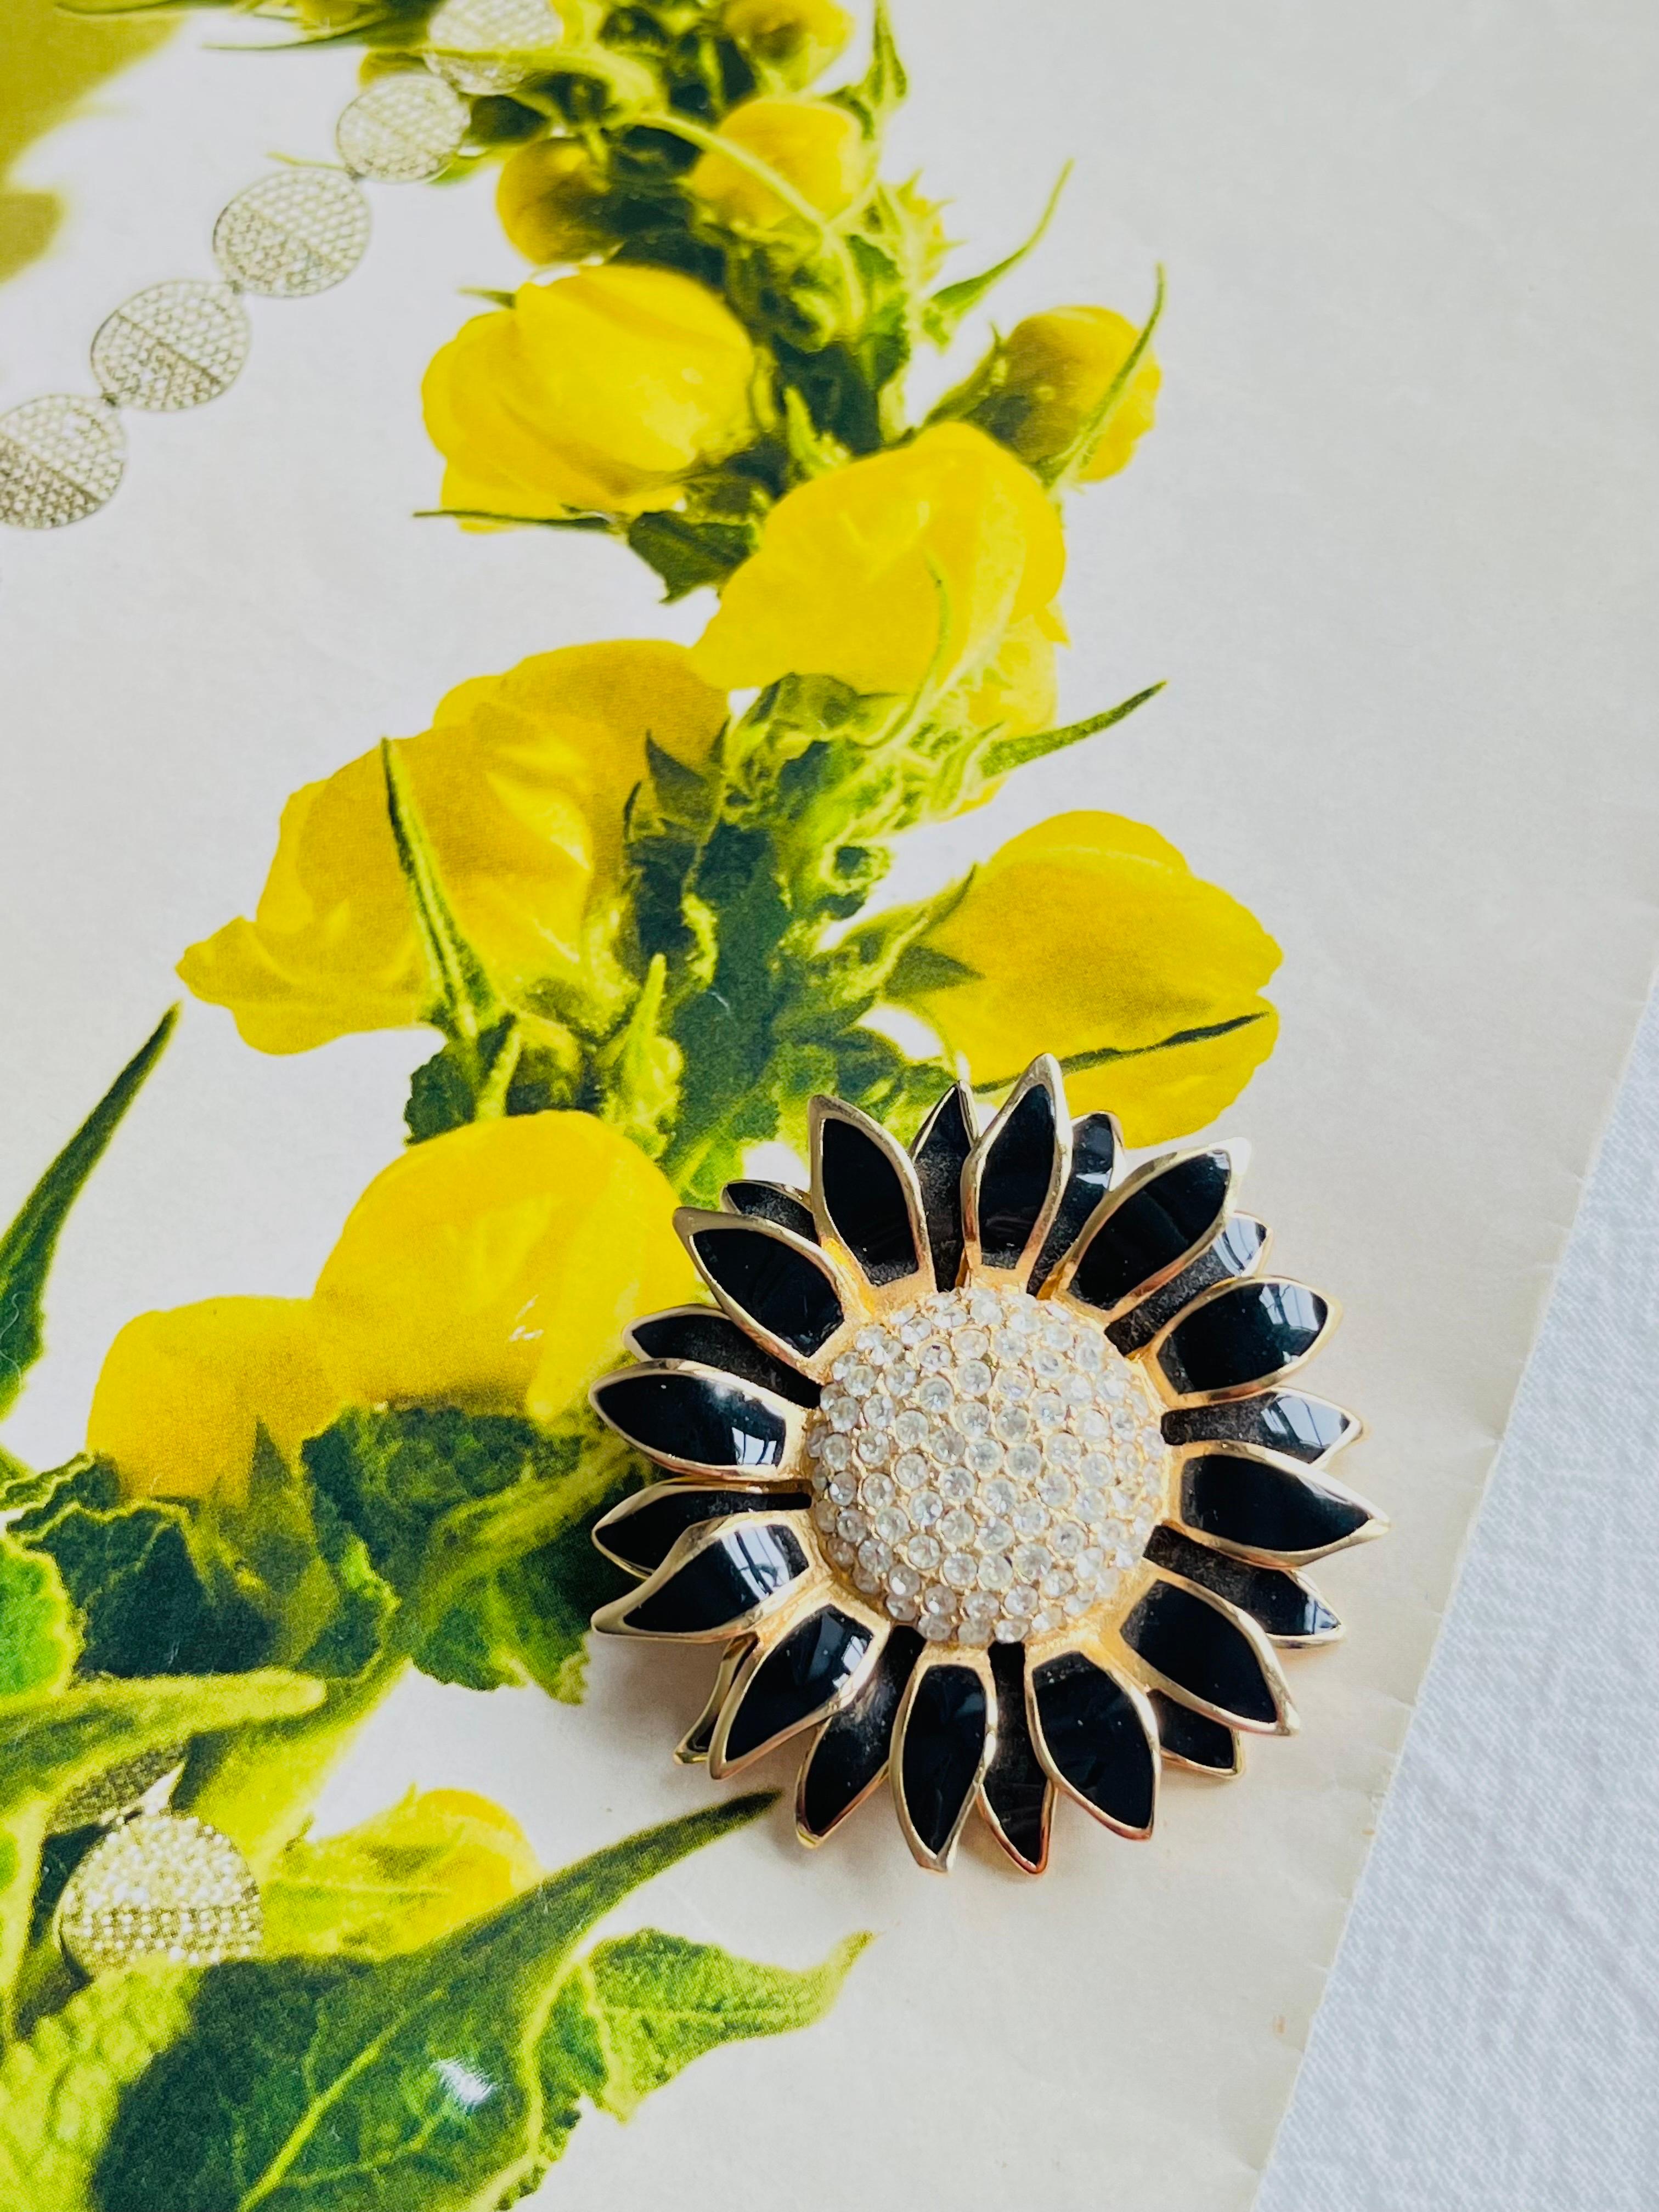 Christian Dior Vintage 1980s Crystals Black Petal Sonnenblume Double Layer Brosche, Gold Tone

Sehr guter Zustand. Selten zu finden. Auf der Rückseite signiert. 100% echt.

Größe: 4,5*4,5 cm.

Gewicht: 24.0 g.
_ _ _

Großartig für den täglichen